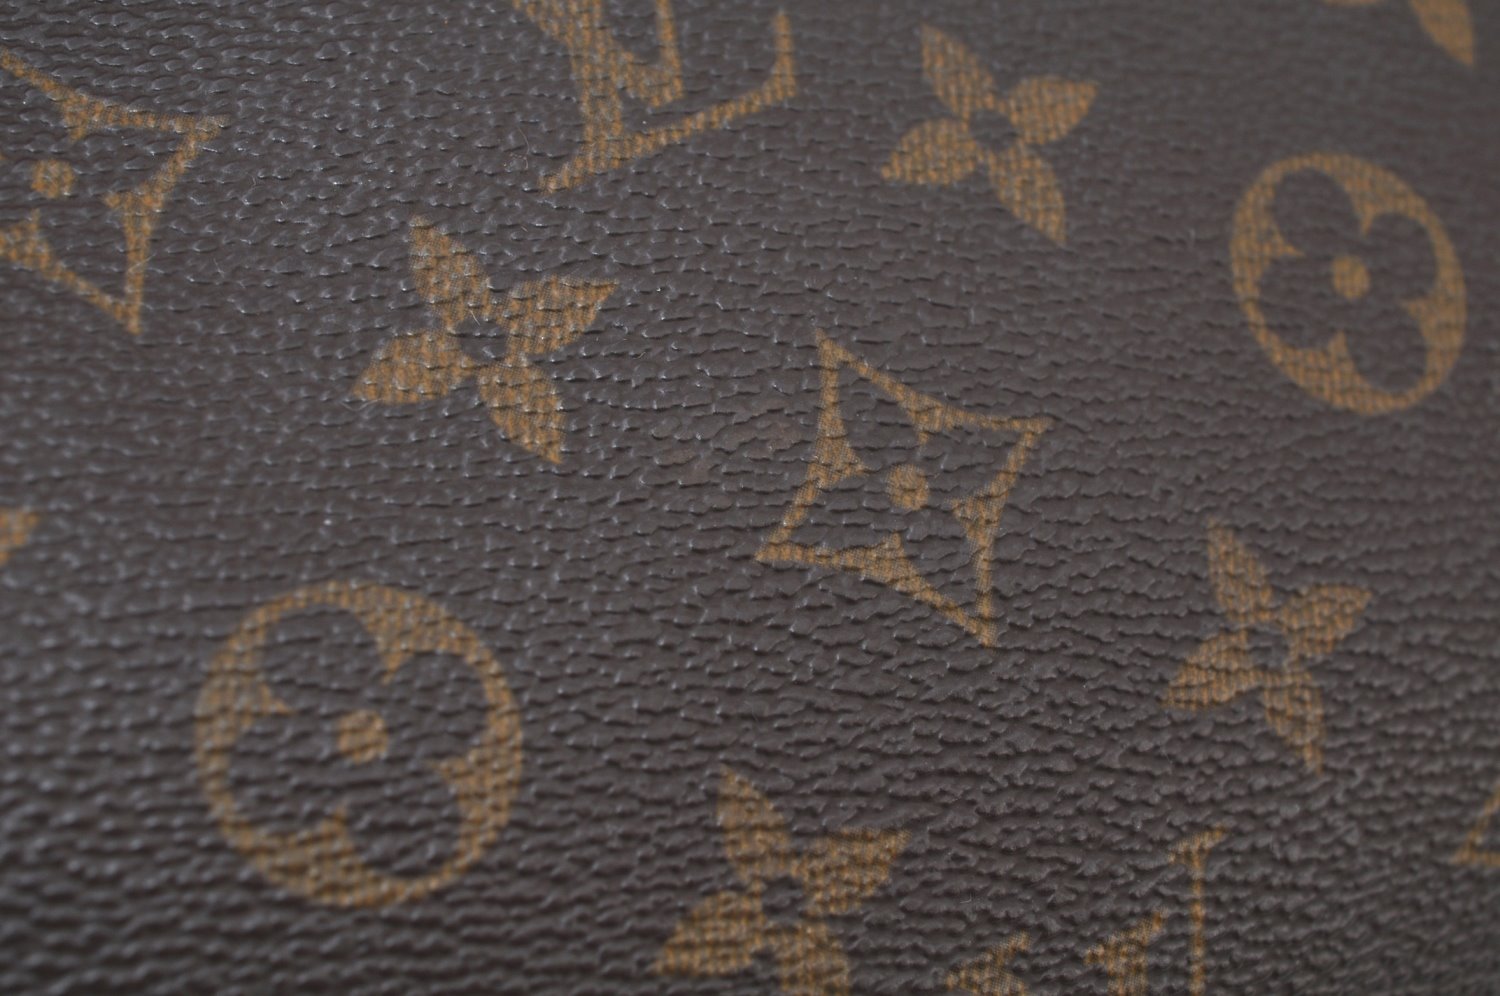 Authentic Louis Vuitton Monogram Pochette Accessoires Pouch M51980 LV Junk 9814I